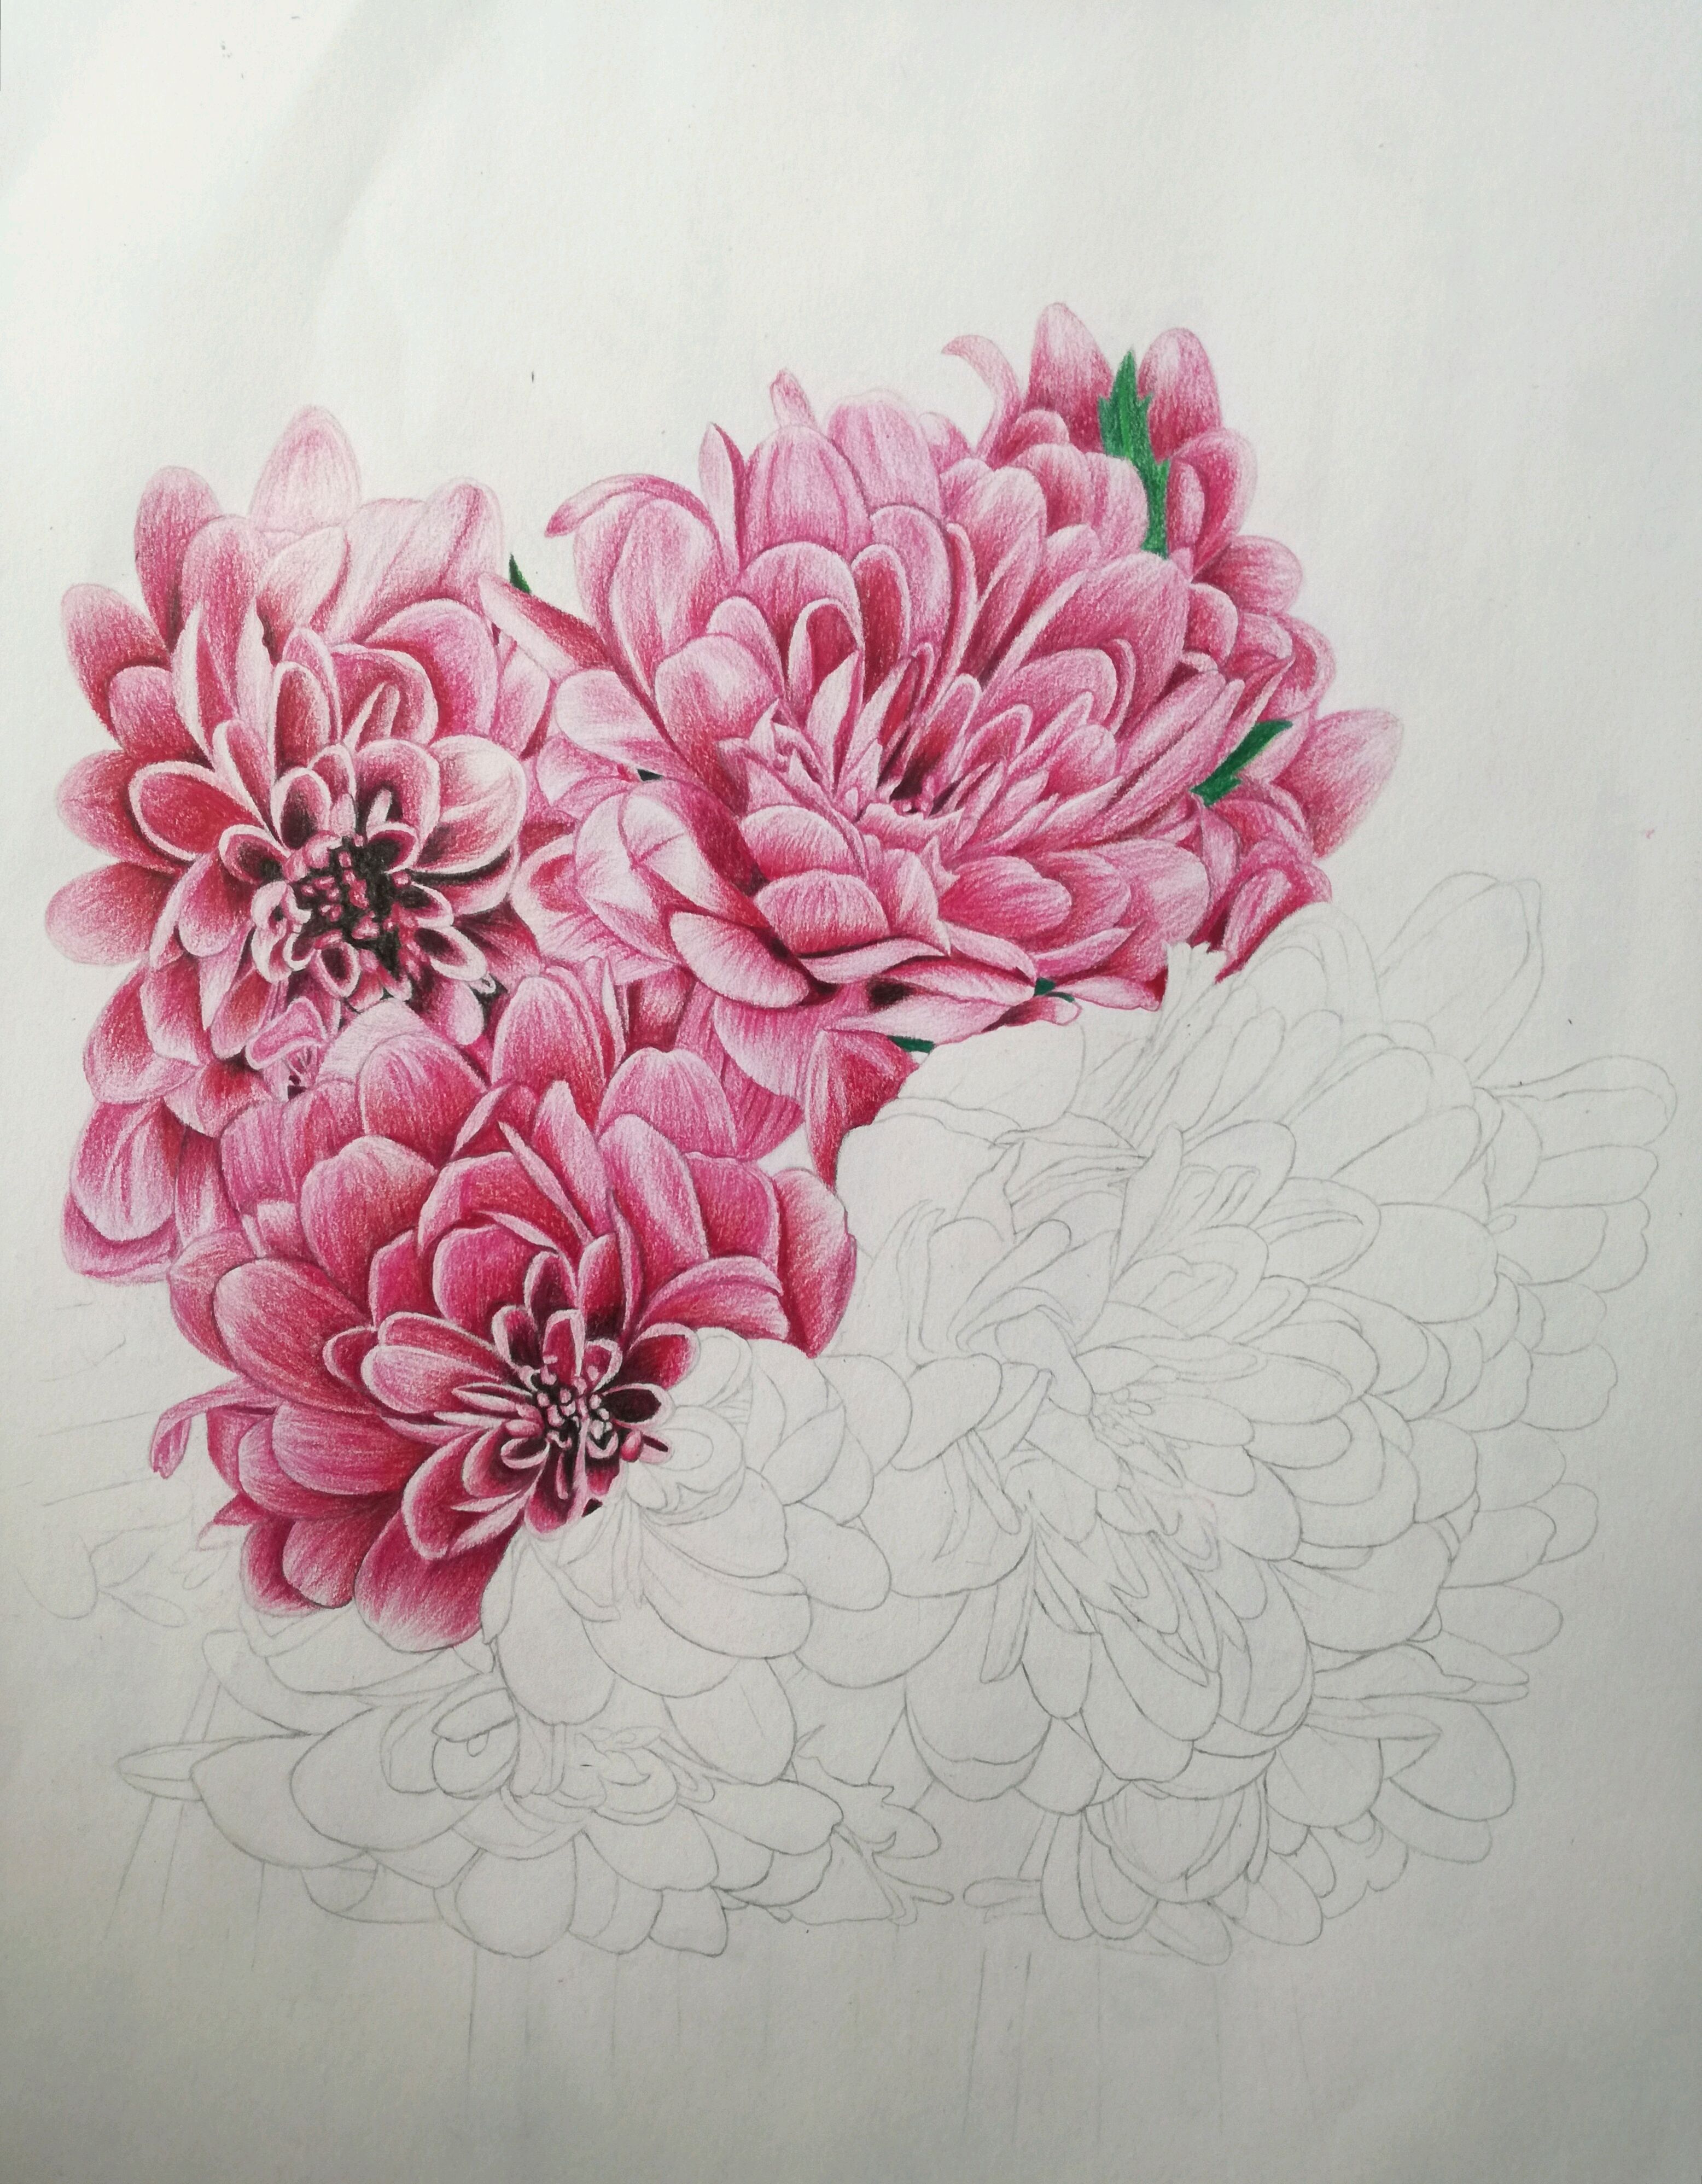 彩铅教程,教你画一大簇美美的菊花